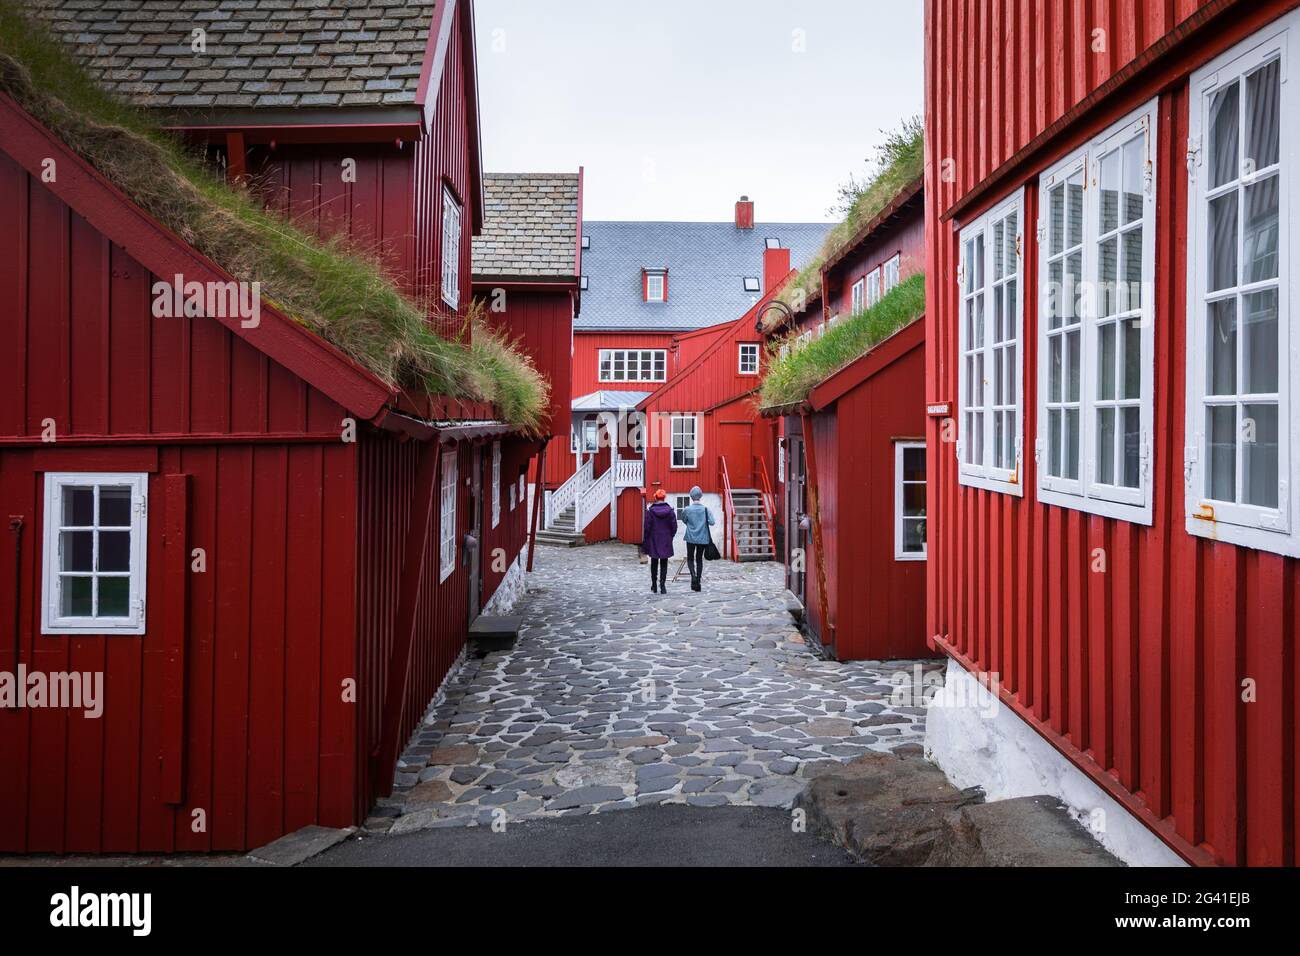 Bâtiments rouges dans le quartier gouvernemental de Tinganes dans la capitale Torshavn, îles Féroé Banque D'Images